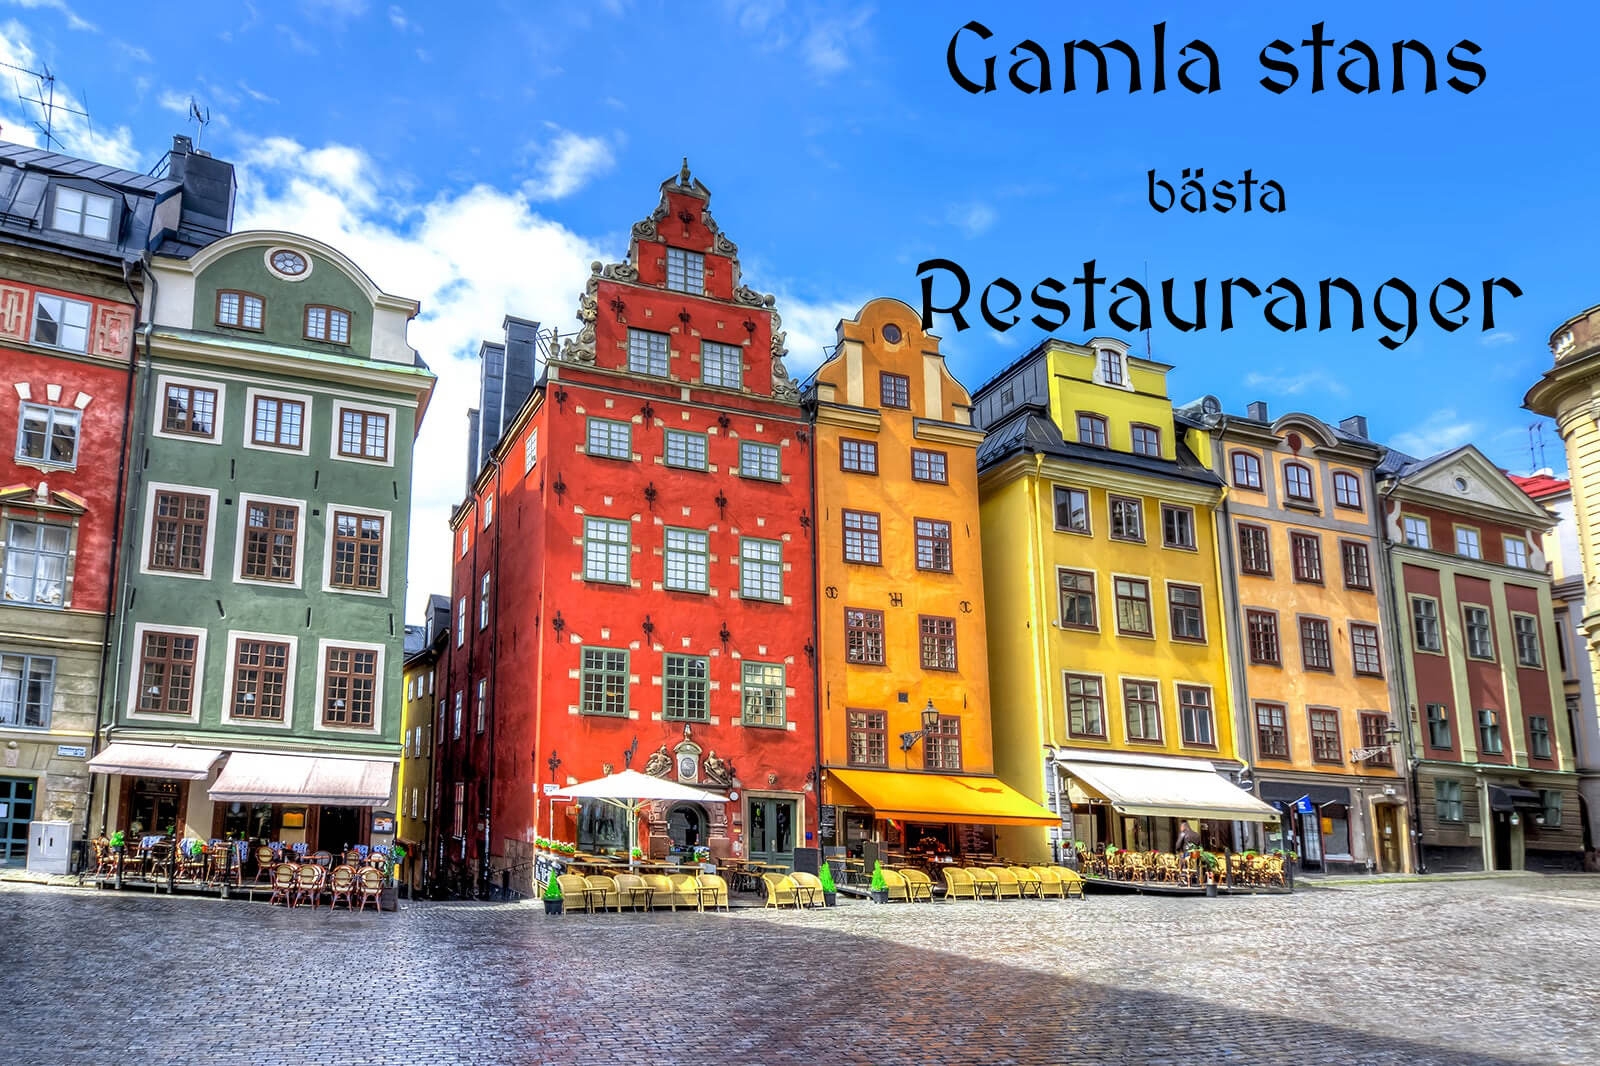 Byggnader i gamla stan Stockholm med texten: Gamla stans bästa Restauranger